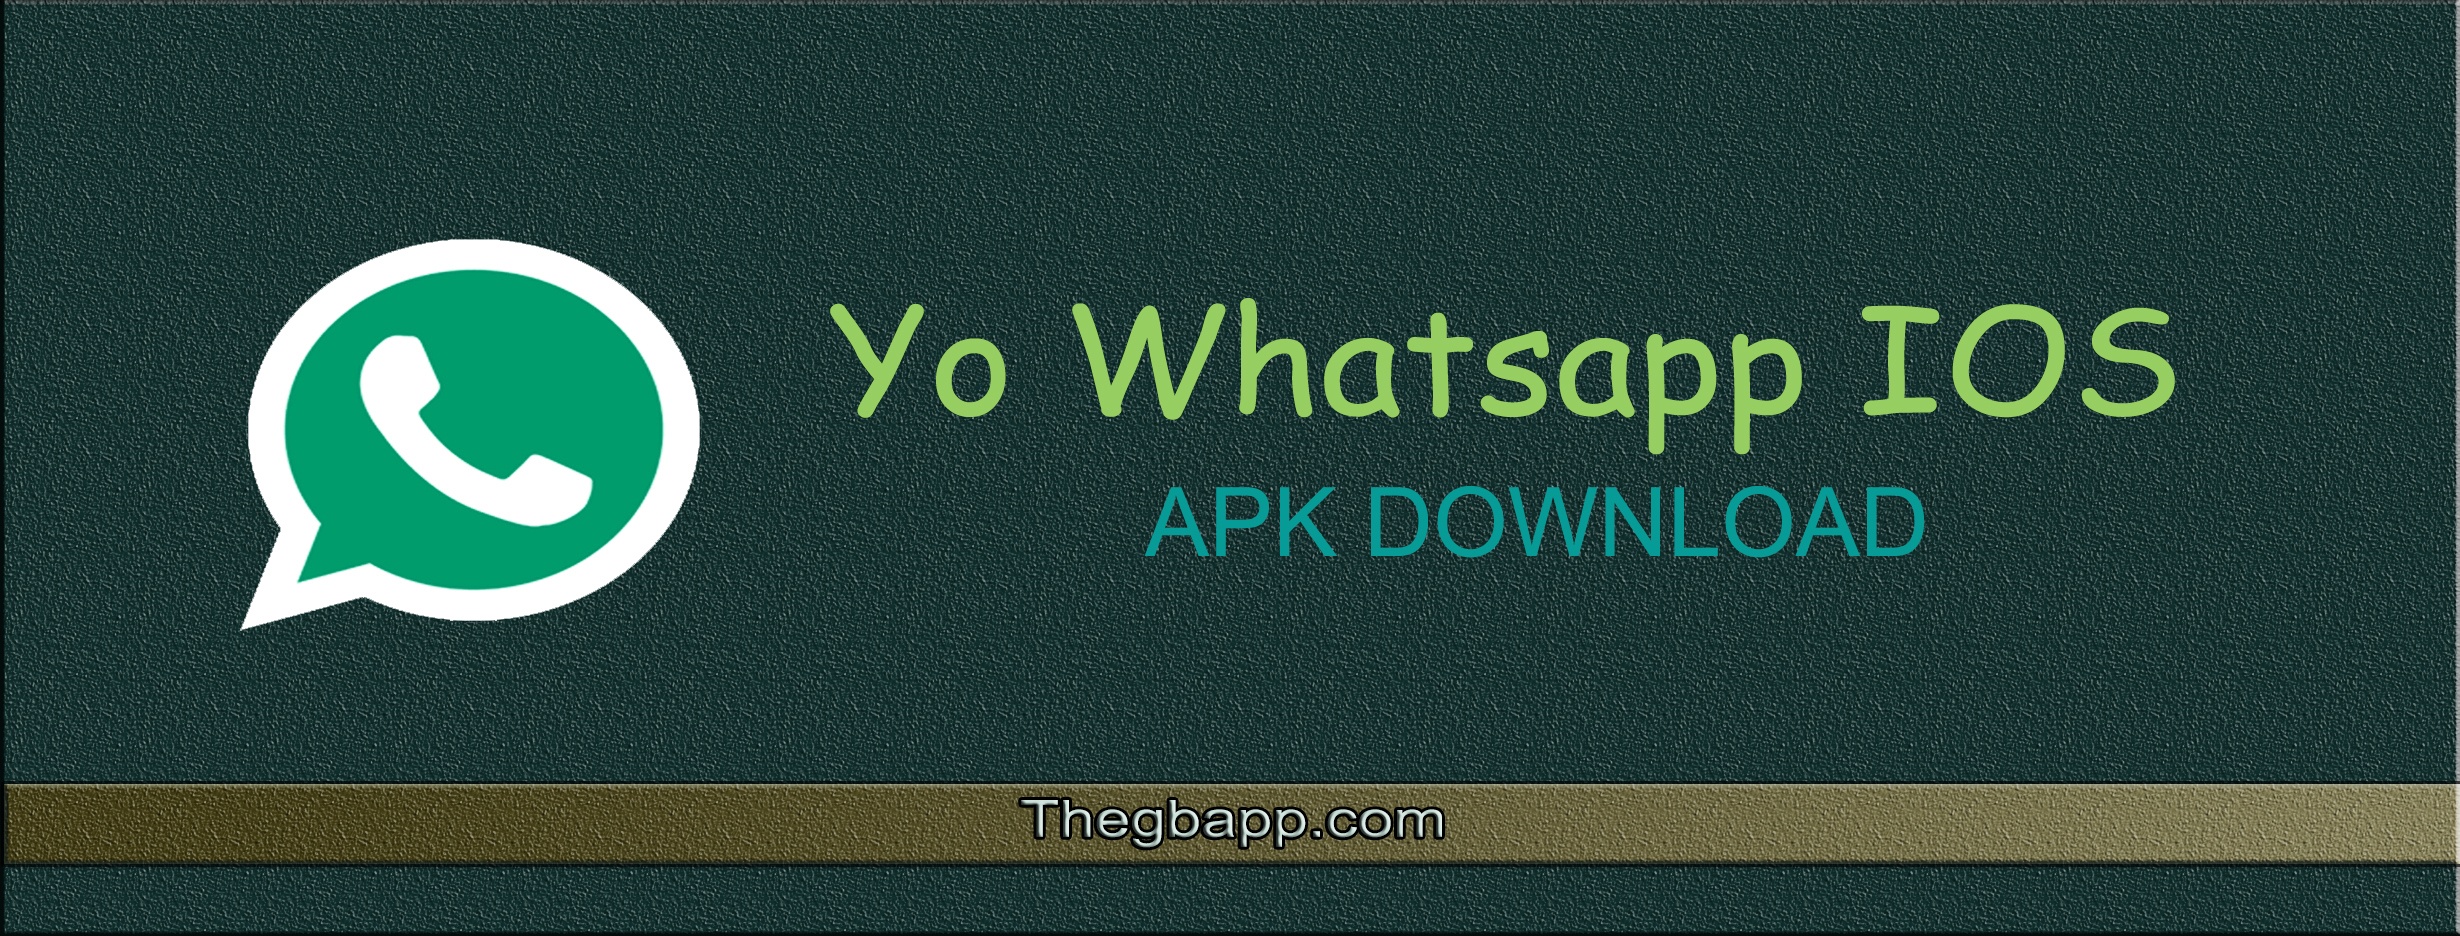 yo whatsapp download